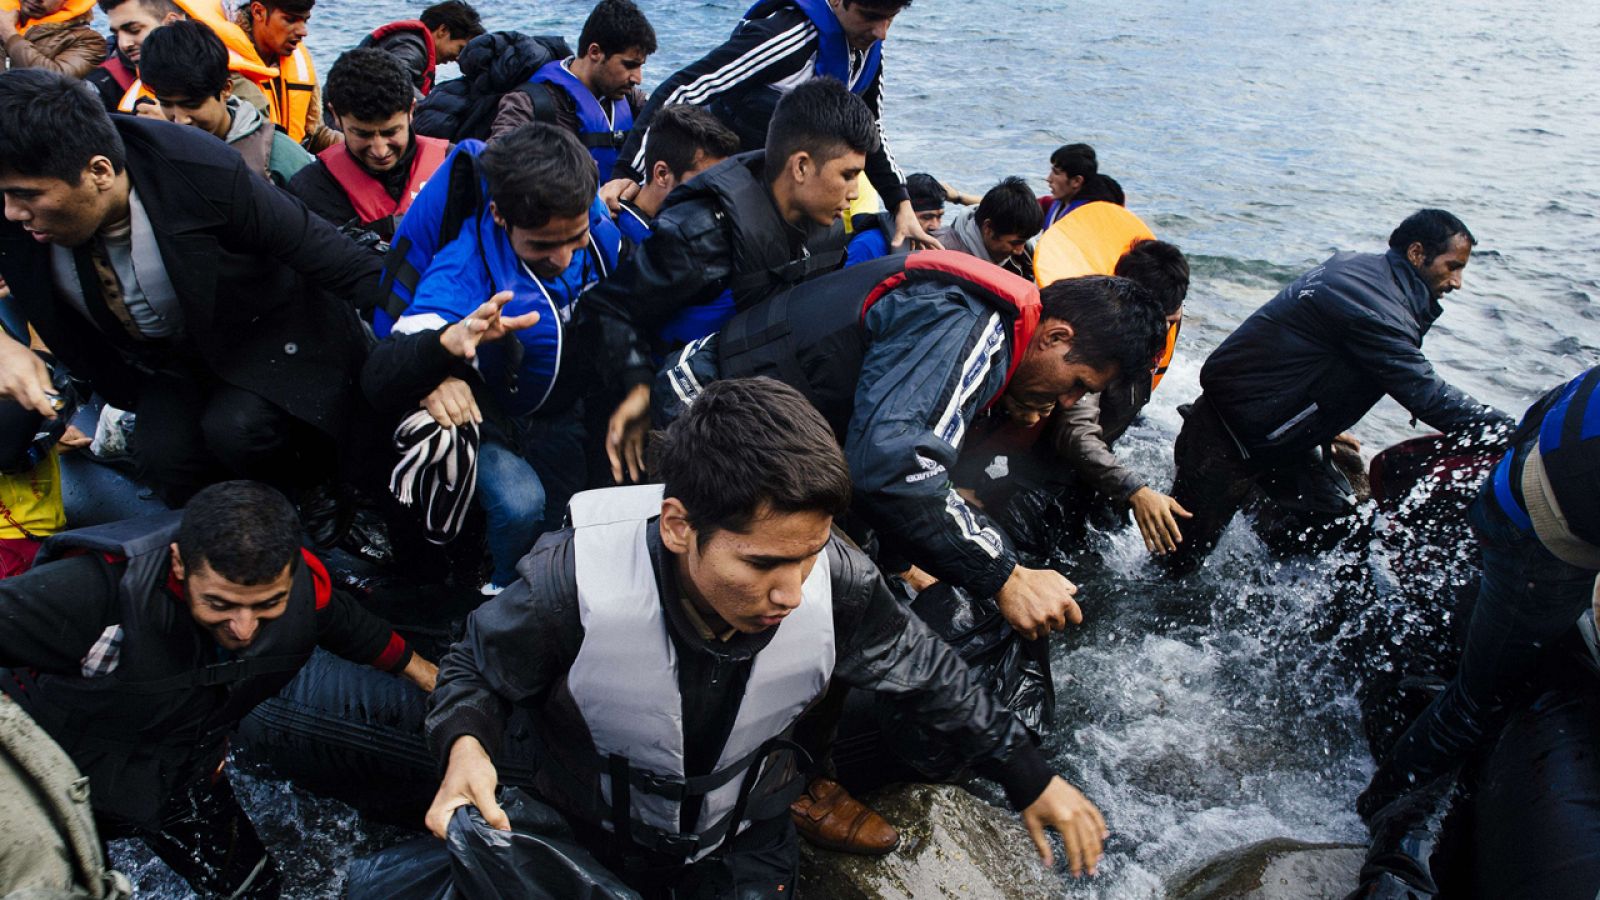 Refugiados y migrantes llegando a la isla griega de Lesbos después de cruzar el mar Egeo desde Turquía